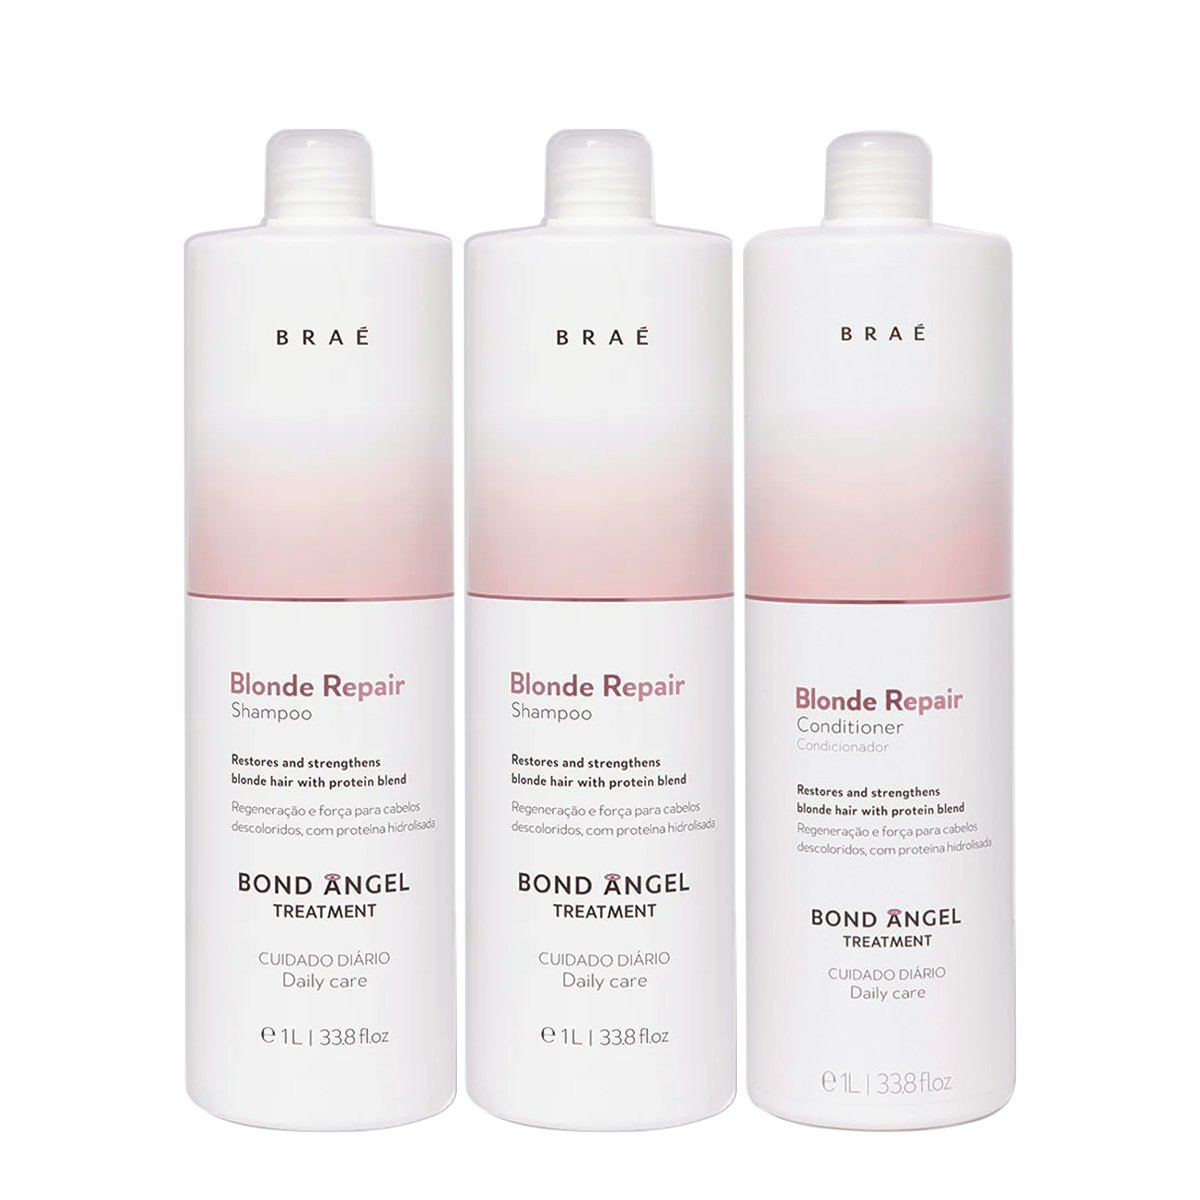 Kit Brae Blond Repair Shampoo Extra Litro e Condicionador (3 produtos) ÚNICO 1